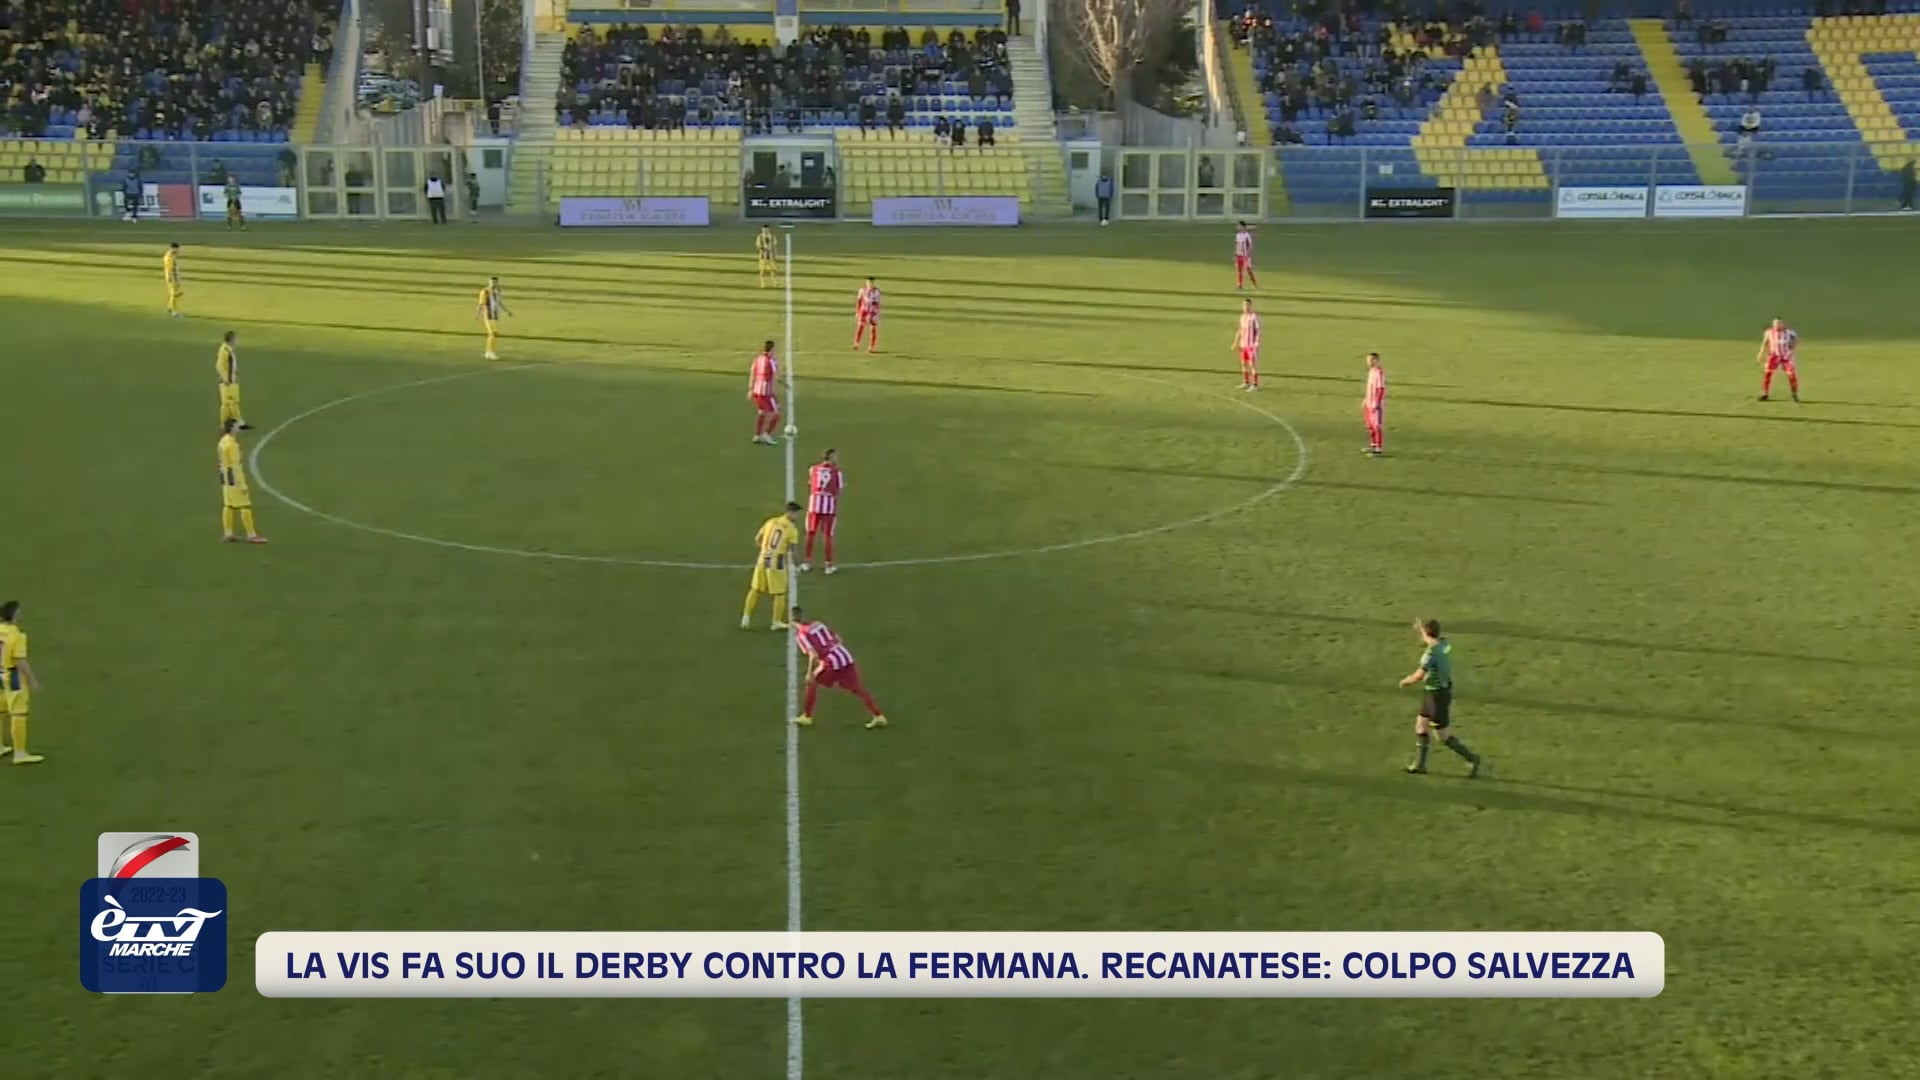  La Vis fa suo il derby contro la Fermana, grande colpo salvezza invece per la Recanatese a Rimini - VIDEO